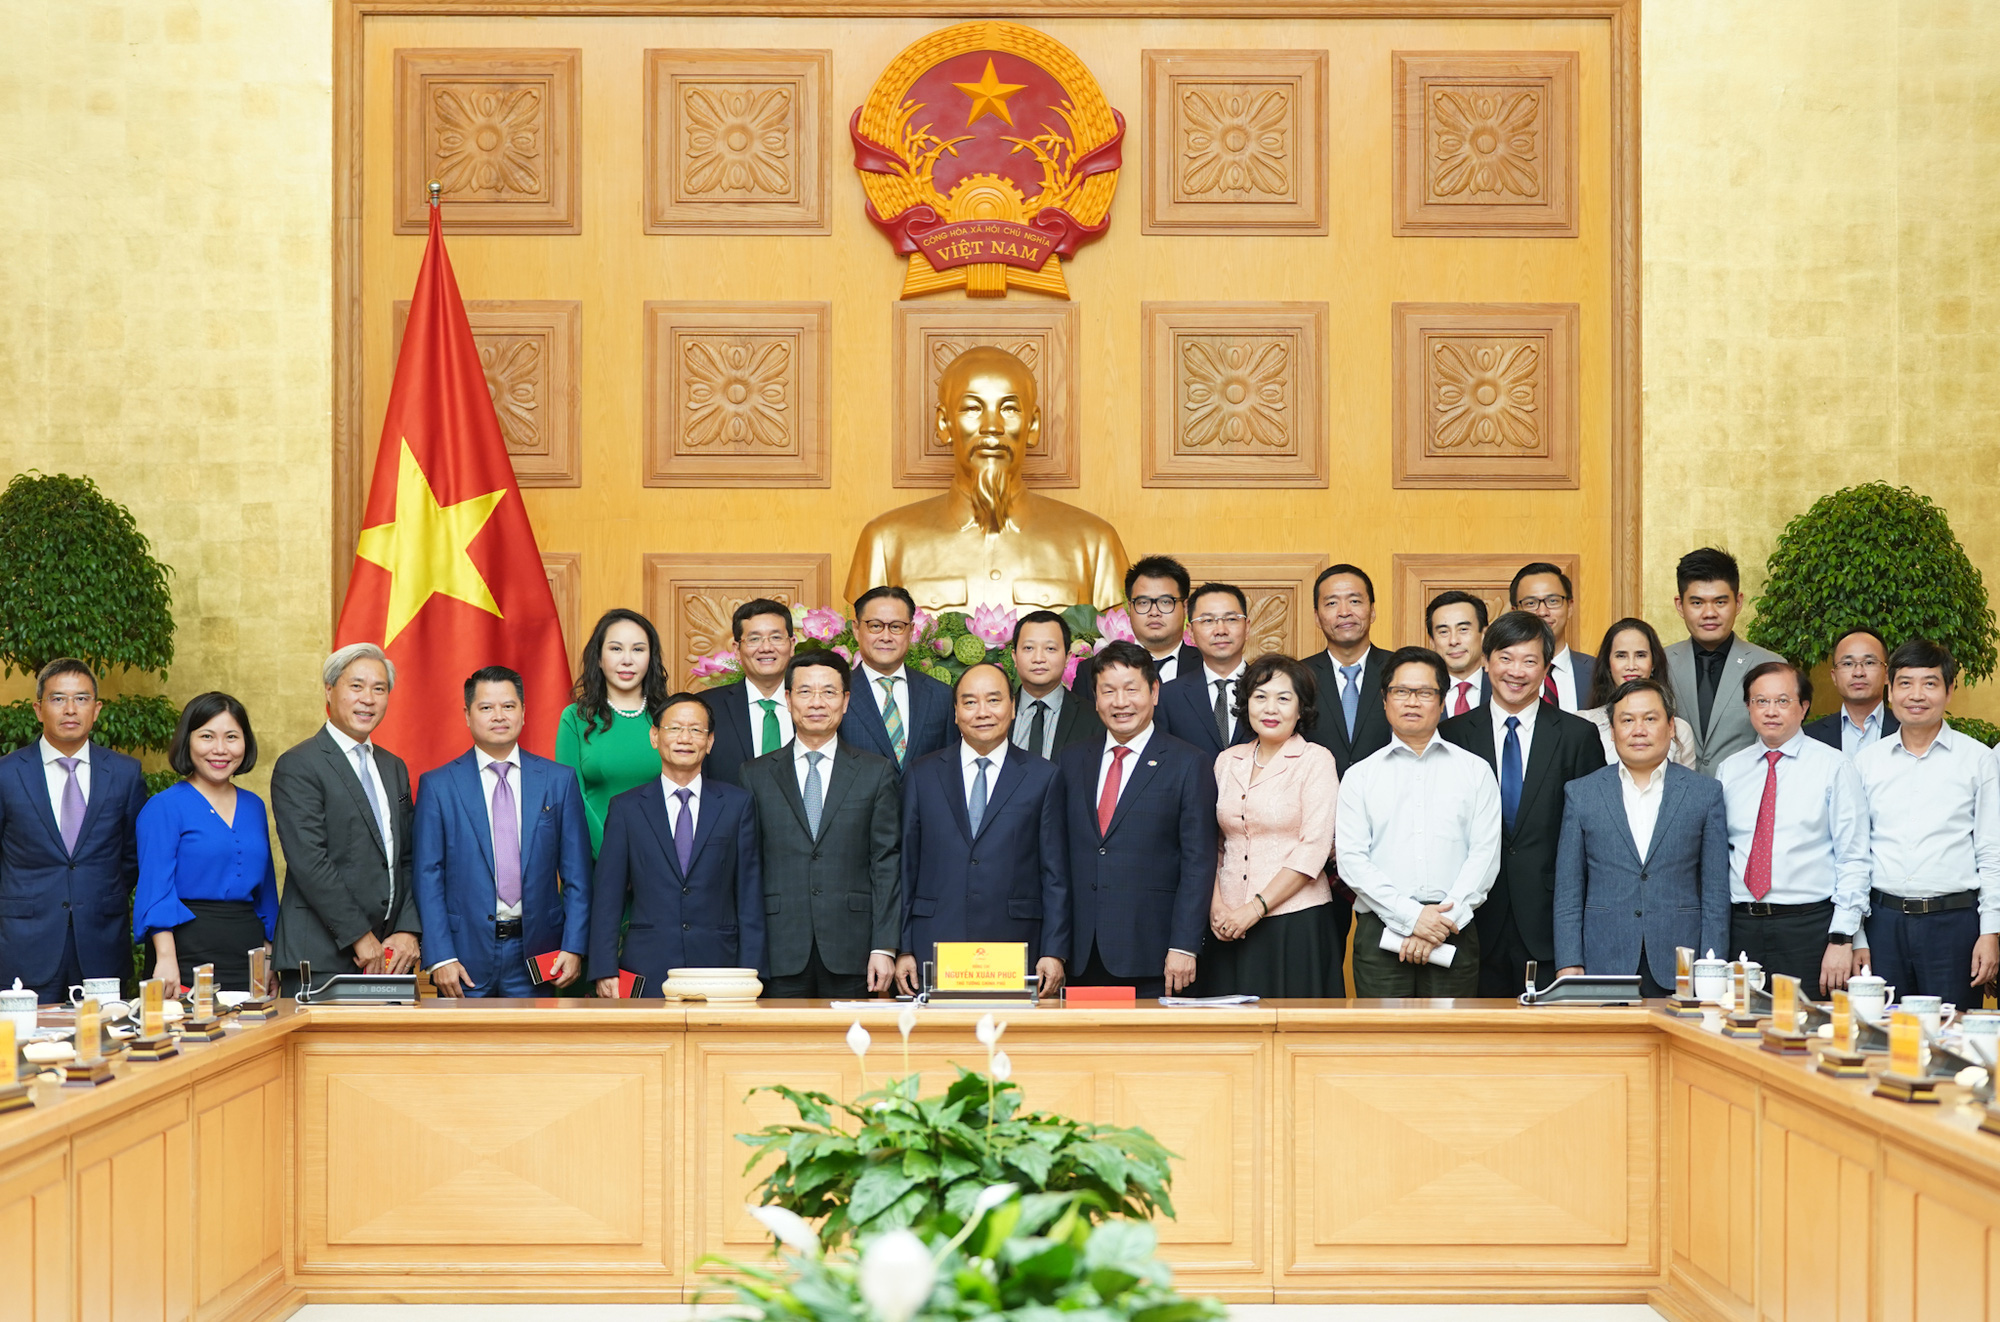 Thủ tướng mong muốn các doanh nghiệp Việt Nam phát triển mạnh mẽ, đứng trên đôi chân của mình trong một nền kinh tế độc lập, tự chủ - Ảnh 2.